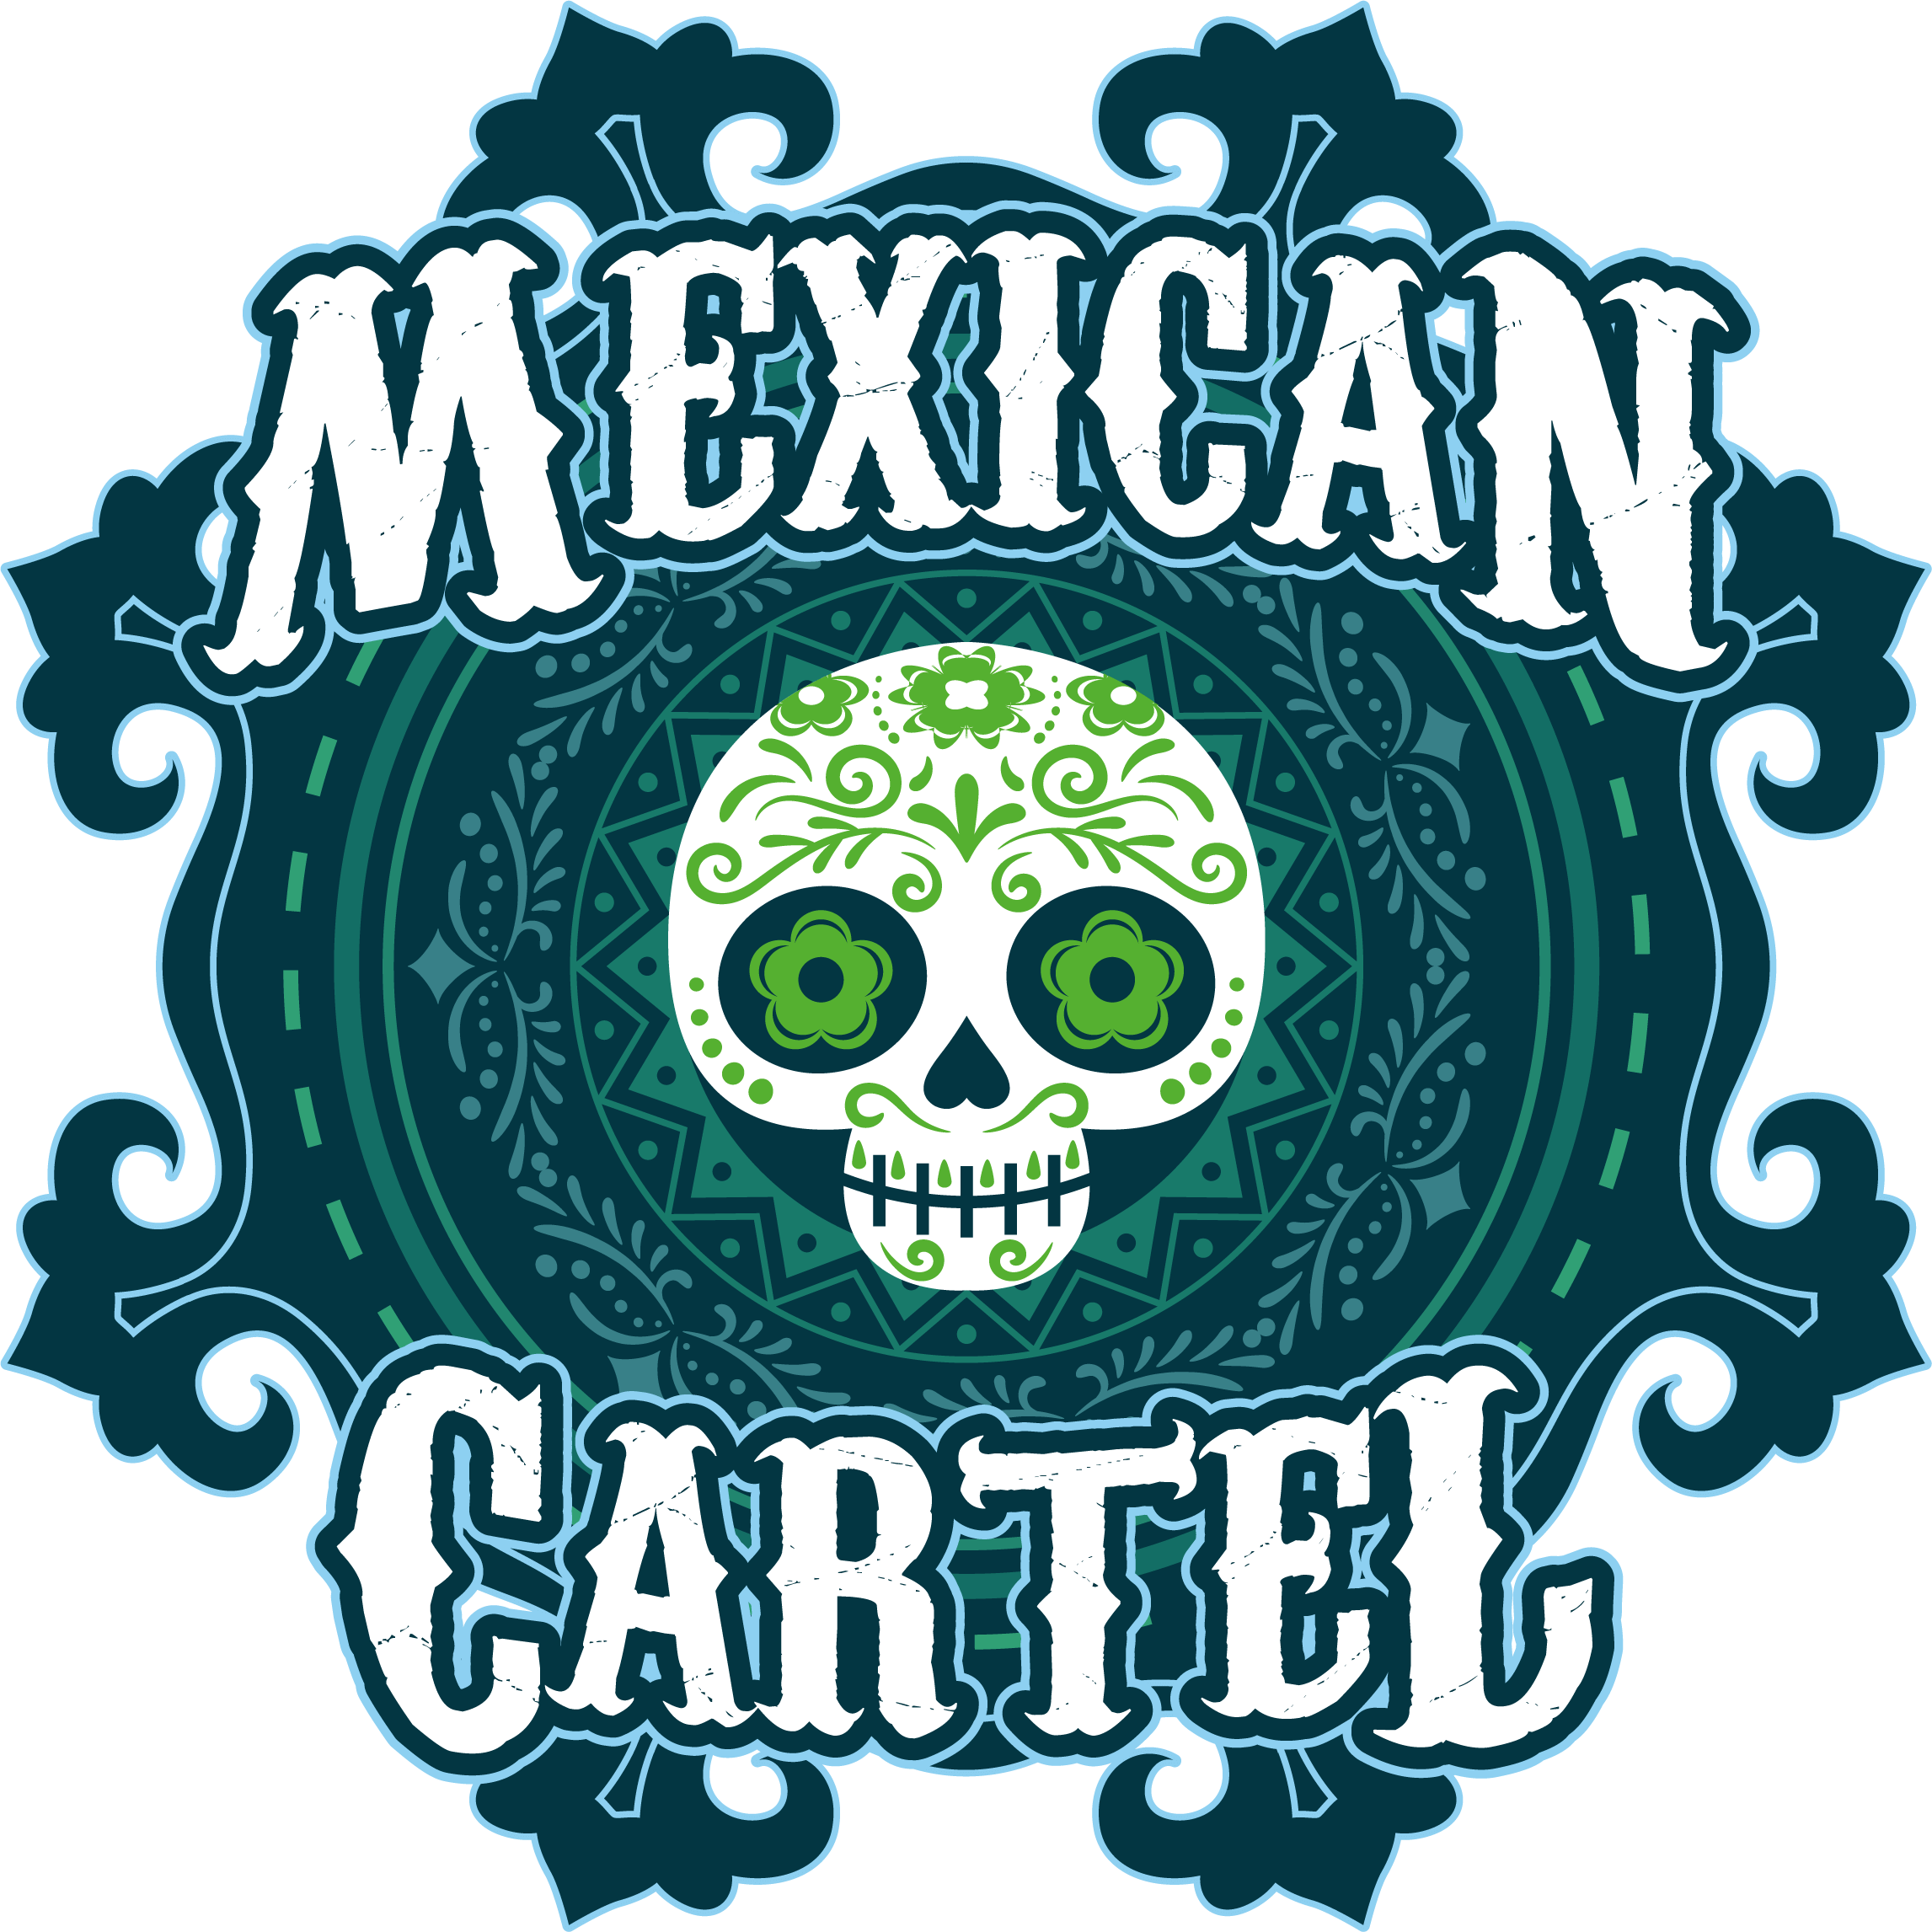 logo_png_mexican_cartel_desc_viper_smoke-2.png